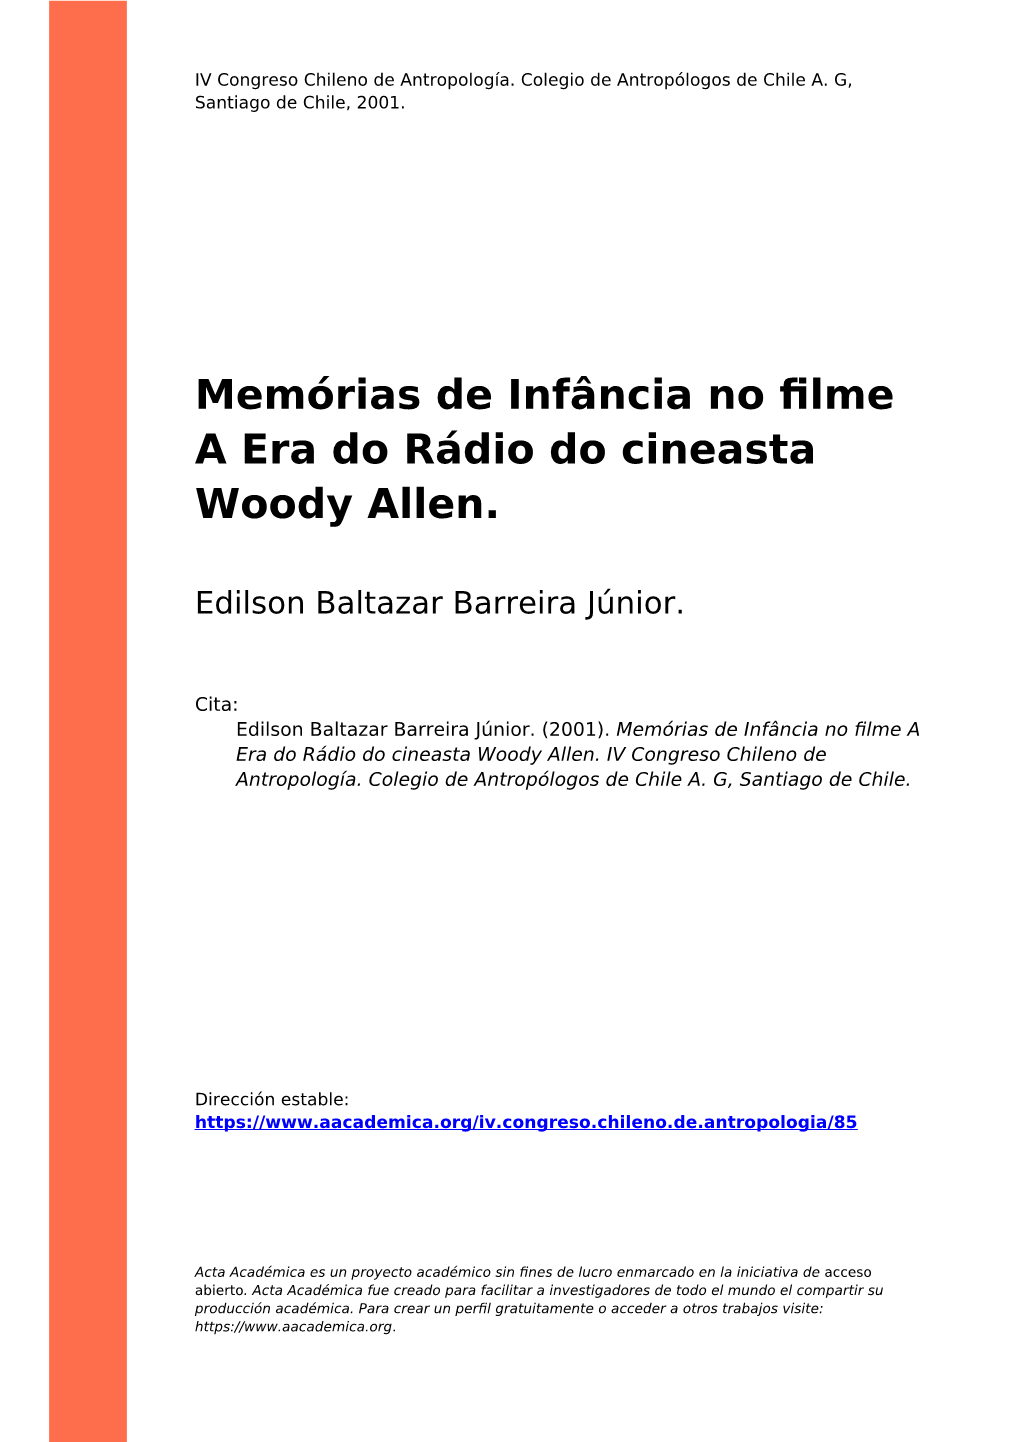 Memórias De Infância No Filme a Era Do Rádio Do Cineasta Woody Allen